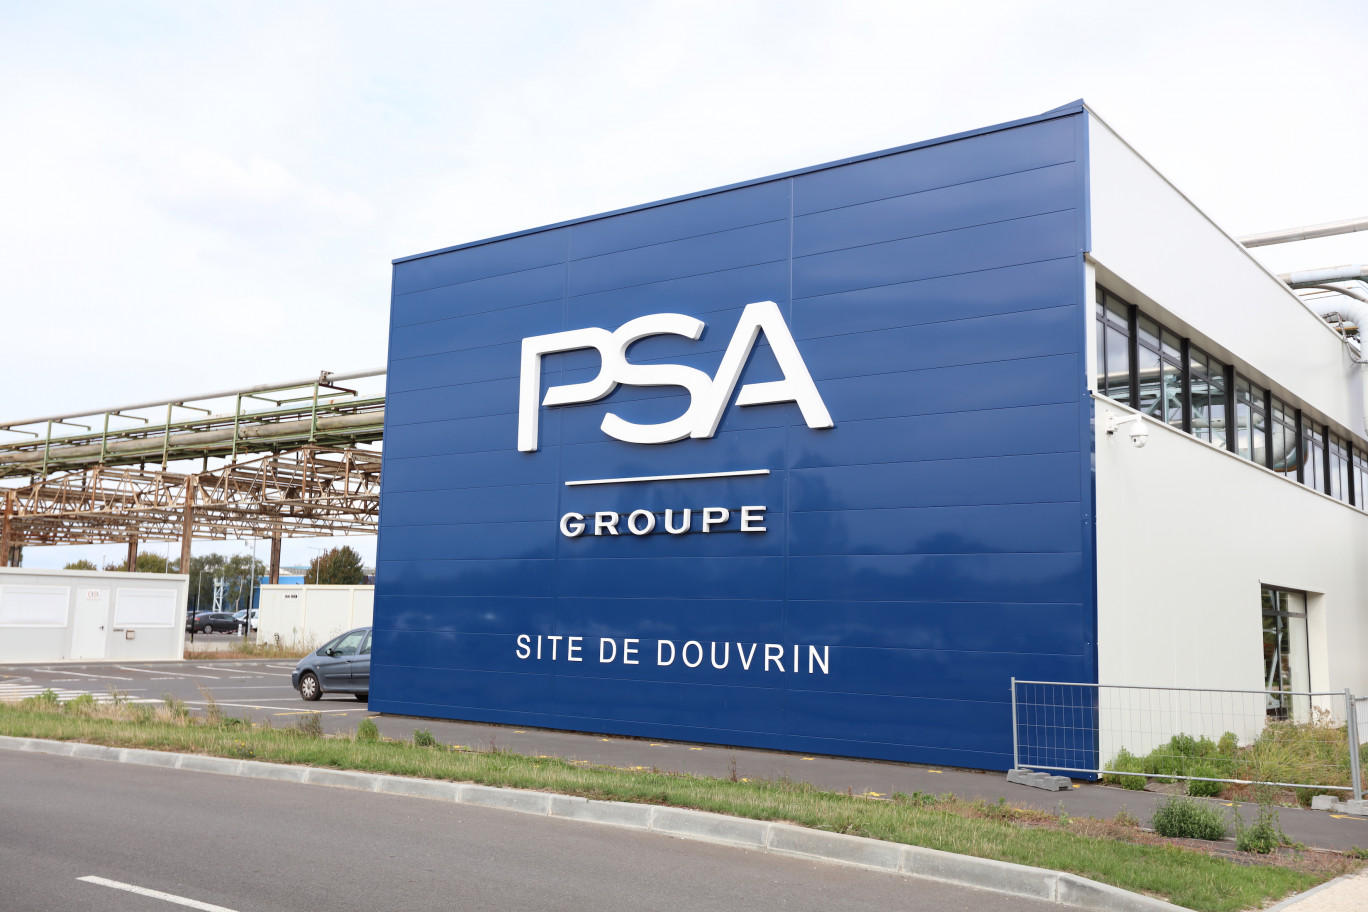 2000 emplois directs devraient être créés sur le site PSA de Douvrin d’ici à 2030 lorsque la Gigafactory aura atteint sa capacité de 24 GWh de production annuelle.